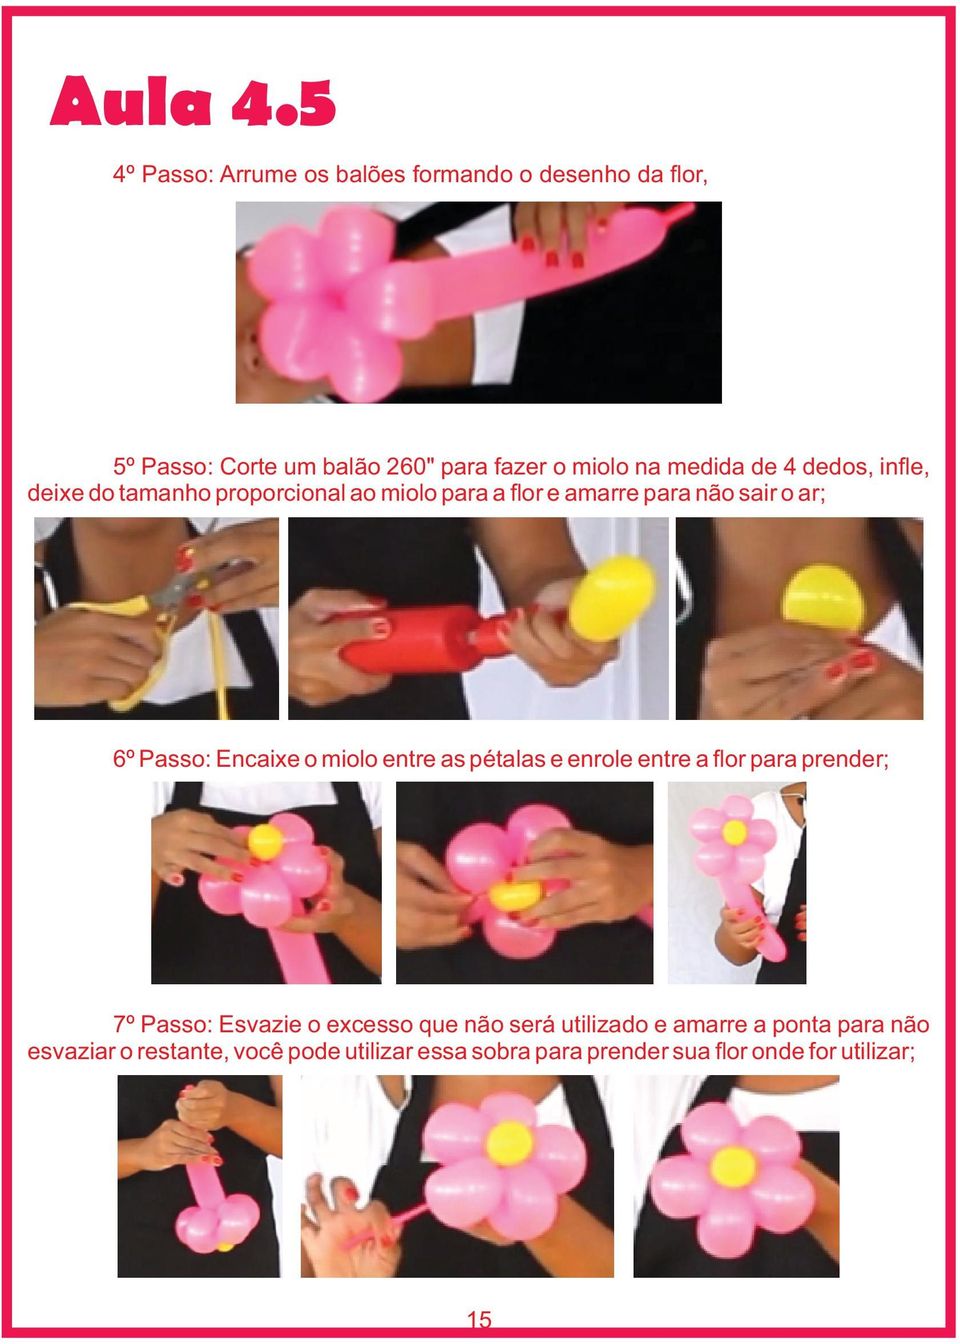 de 4 dedos, infle, deixe do tamanho proporcional ao miolo para a flor e amarre para não sair o ar; 6º Passo: Encaixe